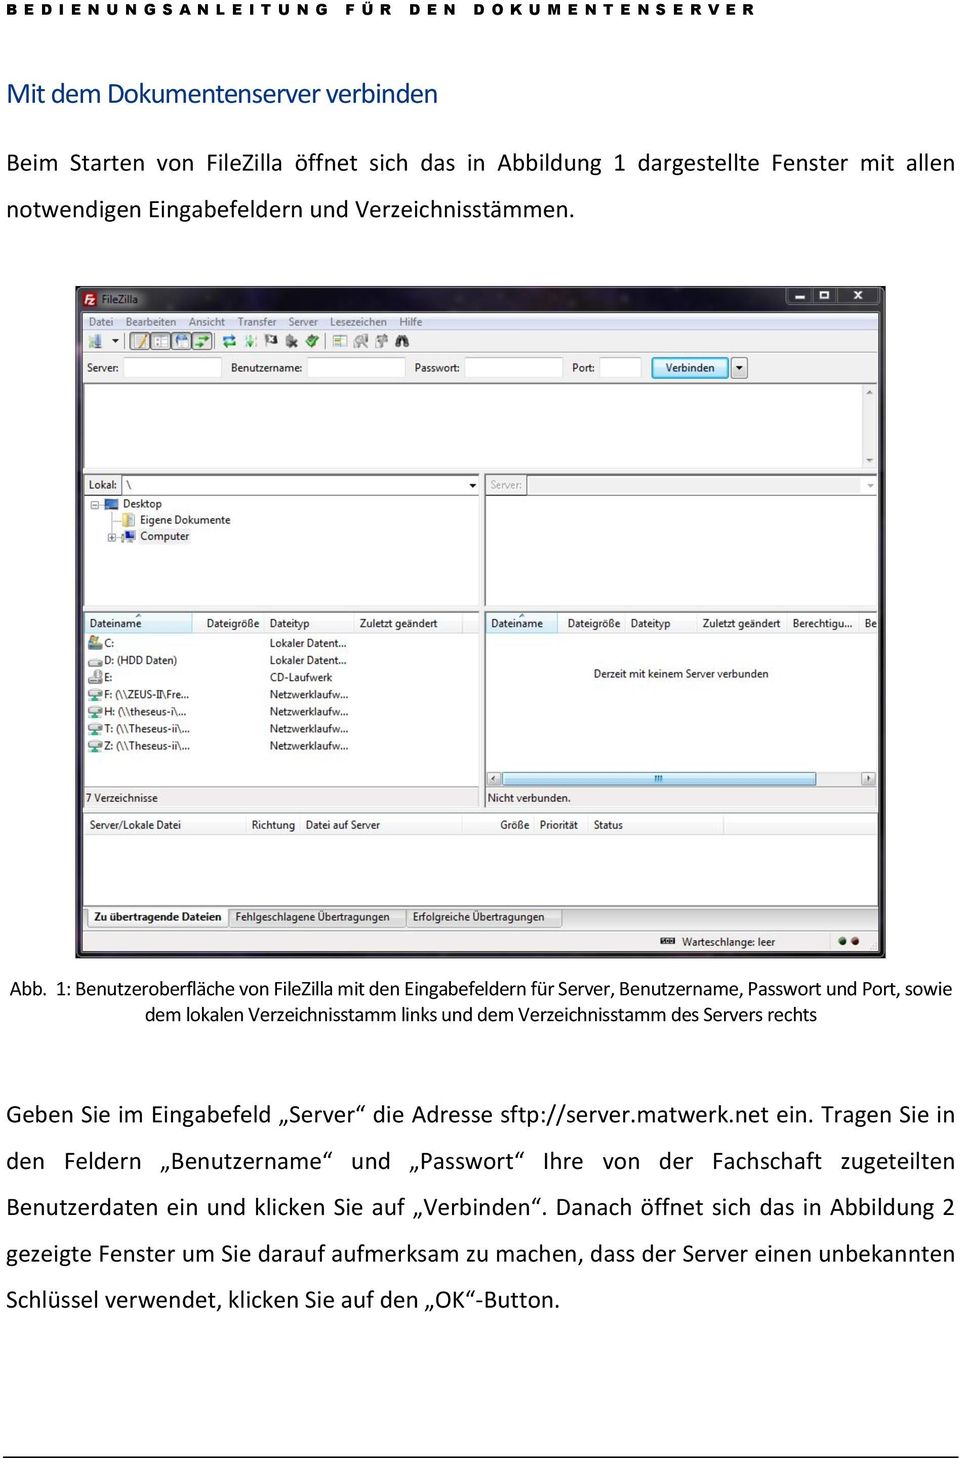 1: Benutzeroberfläche von FileZilla mit den Eingabefeldern für Server, Benutzername, Passwort und Port, sowie dem lokalen Verzeichnisstamm links und dem Verzeichnisstamm des Servers rechts